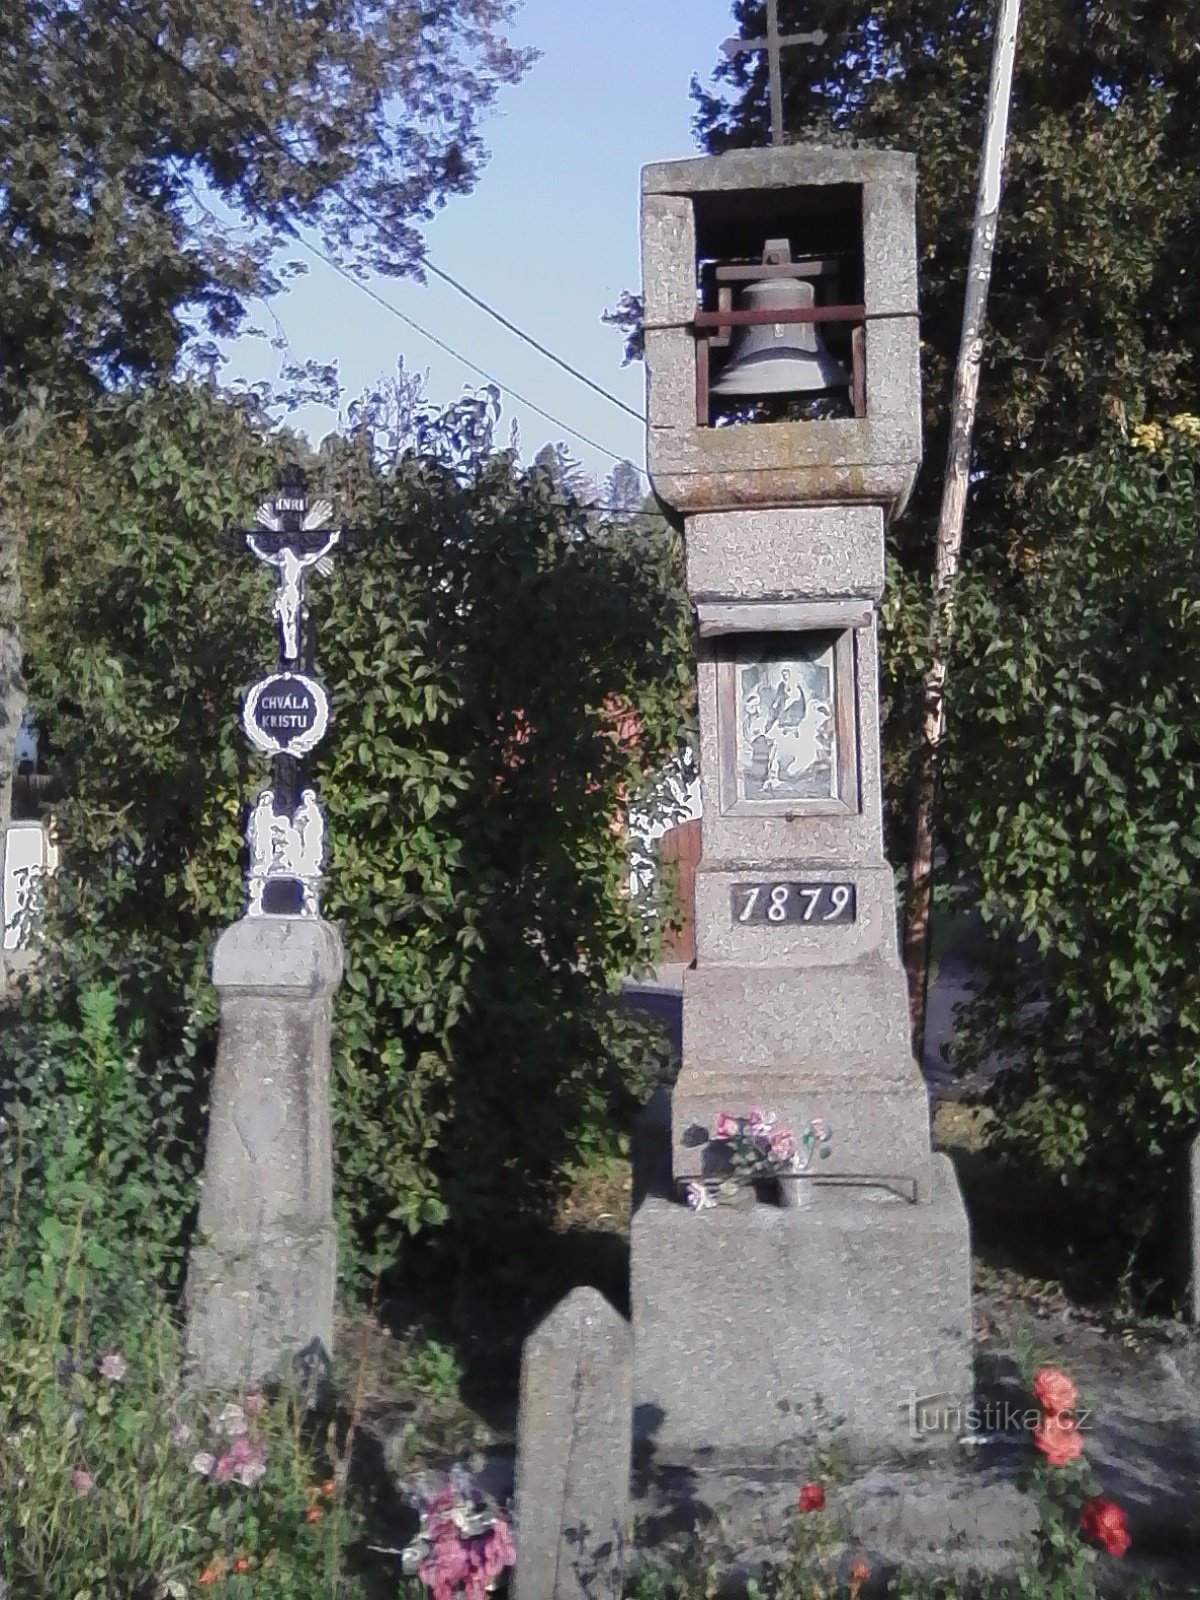 2. Dzwonnica rzeźbiona w kamieniu z krzyżem z 1879 r. w Vilasovej Lhota